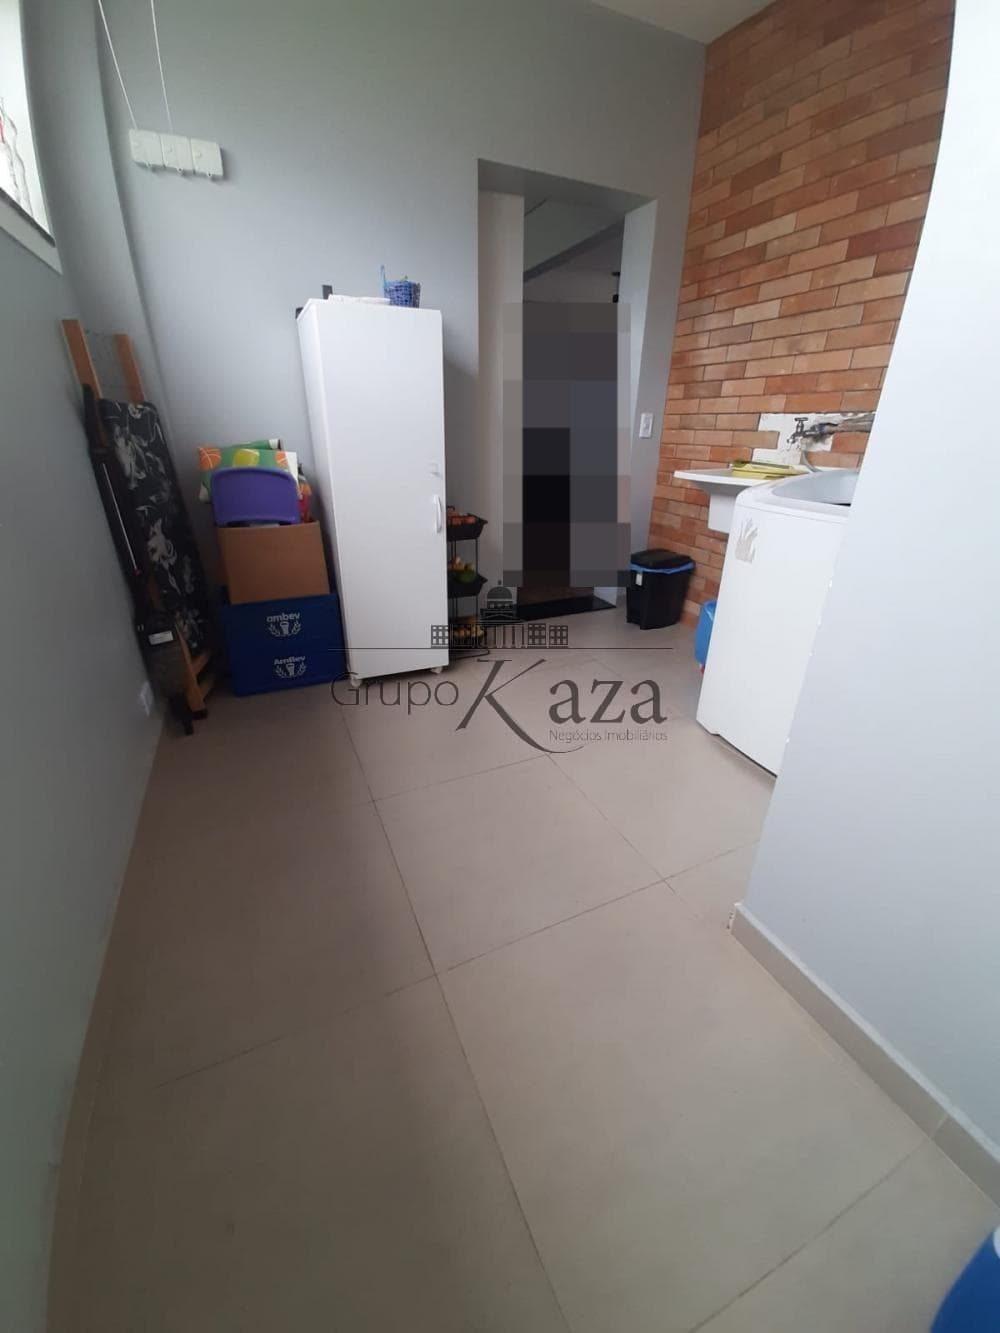 Foto 24 de Apartamento Padrão em Centro, São José dos Campos - imagem 24